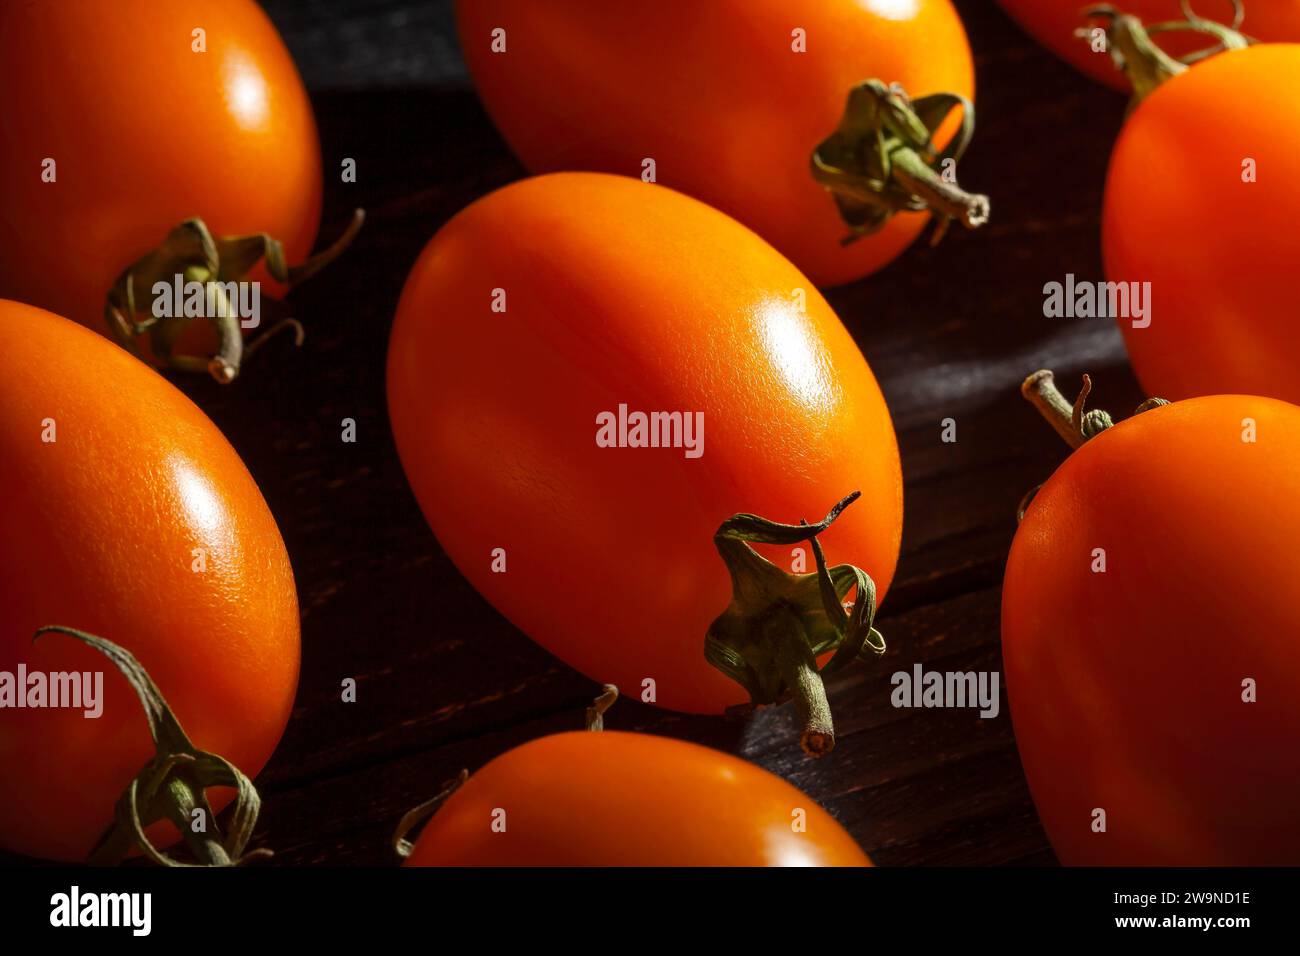 tomate prune orange sur fond de bois Banque D'Images